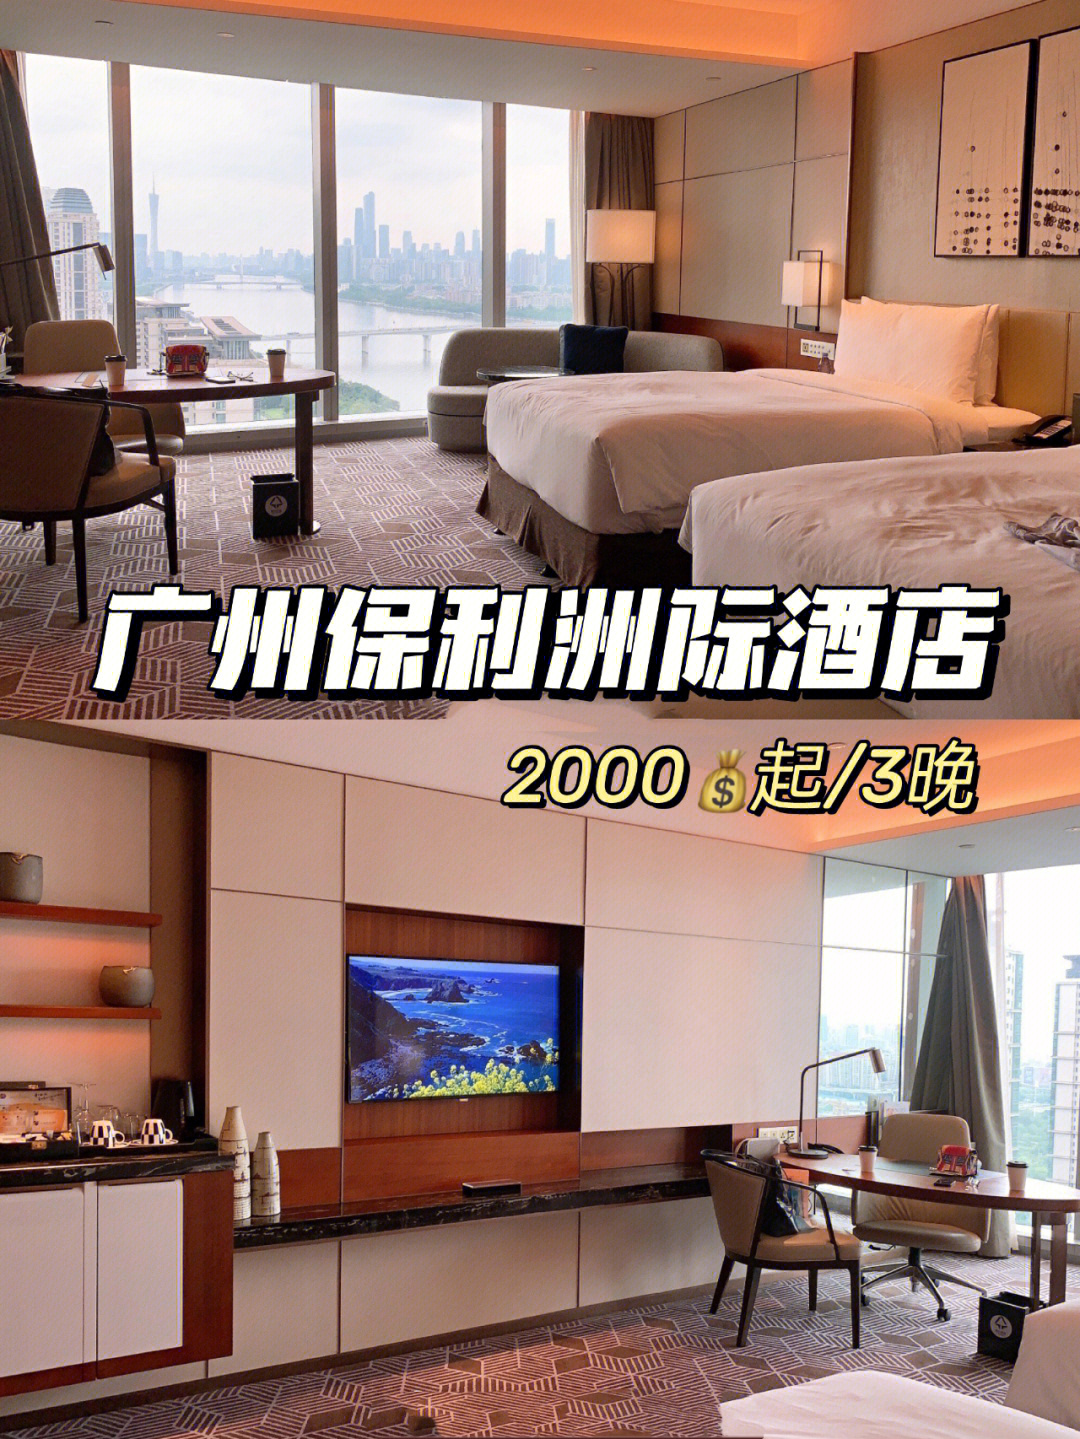 09酒店位置:广州保利洲际酒店是当时ihg华南的旗舰店 60152018